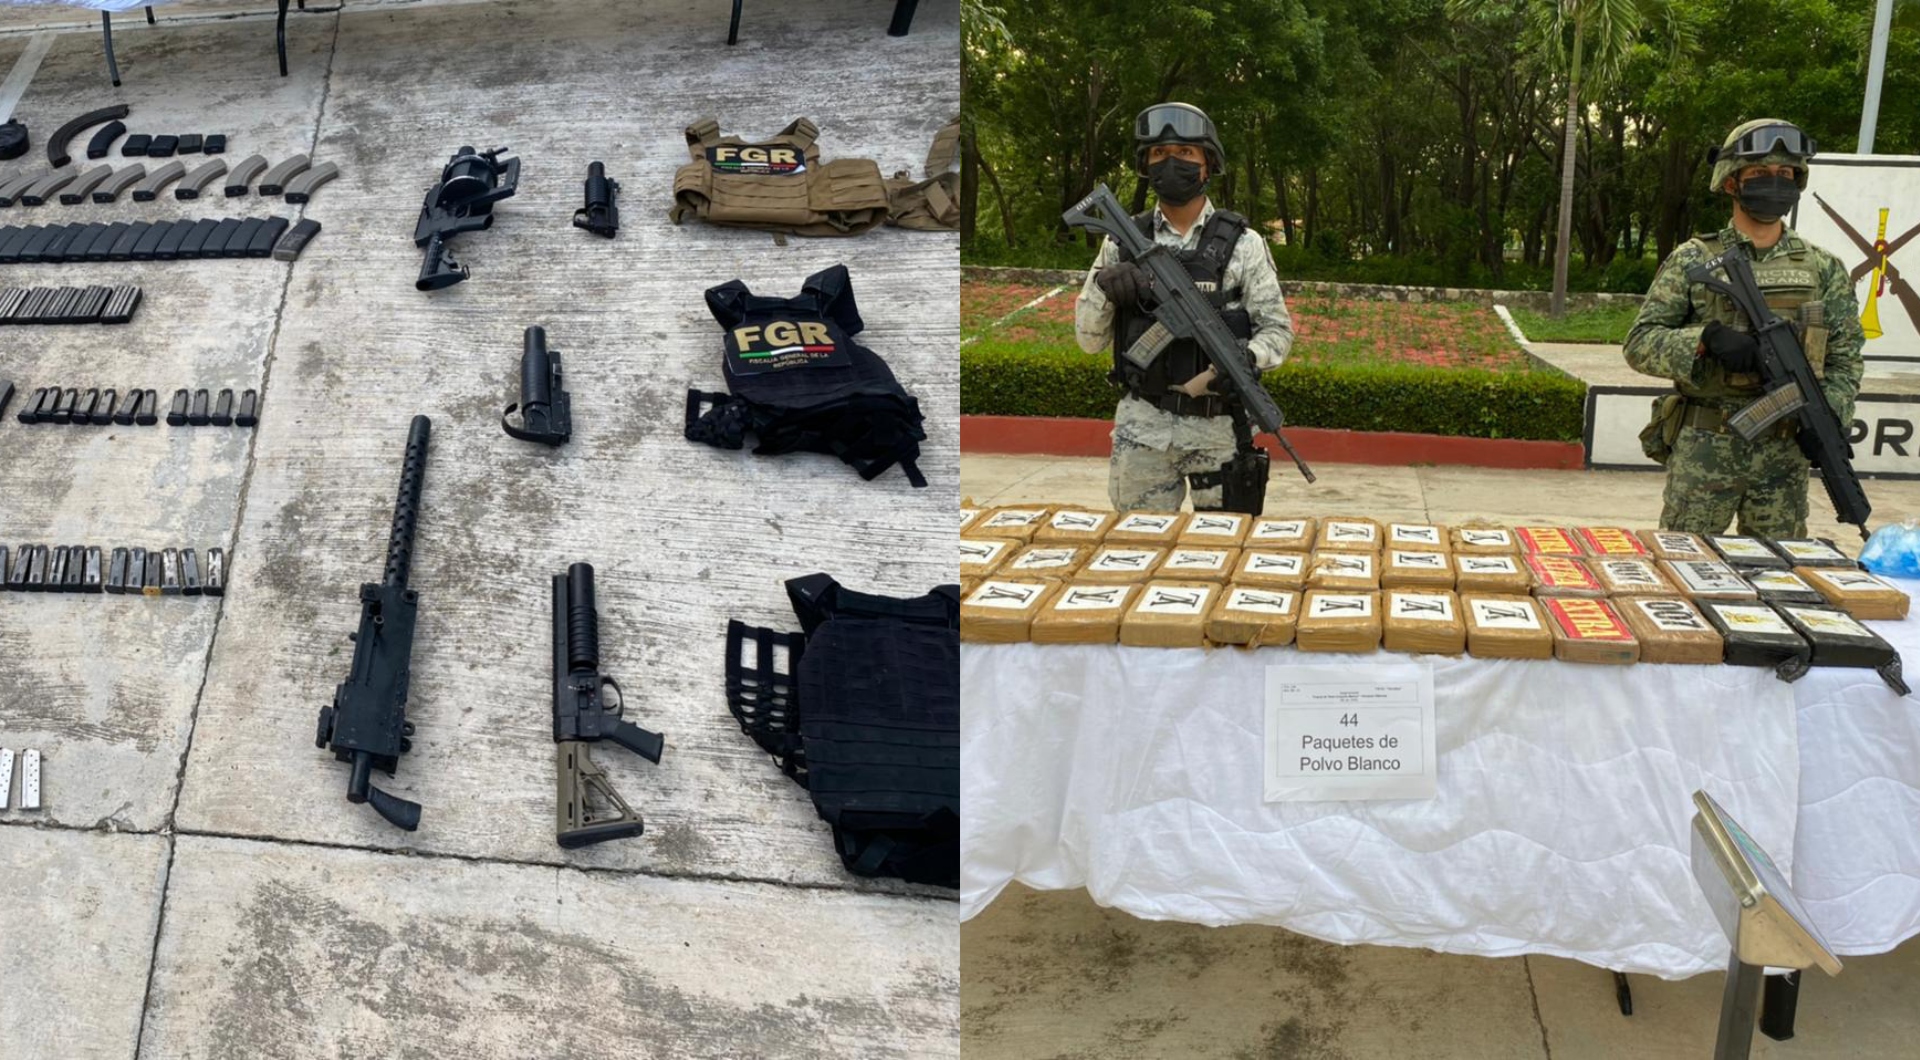 La Secretaría de la Defensa Nacional y
la Guardia Nacional decomisaron 4 millones de pesos, armas y equipo táctico con estampado de la FGR (Foto: Sedena)